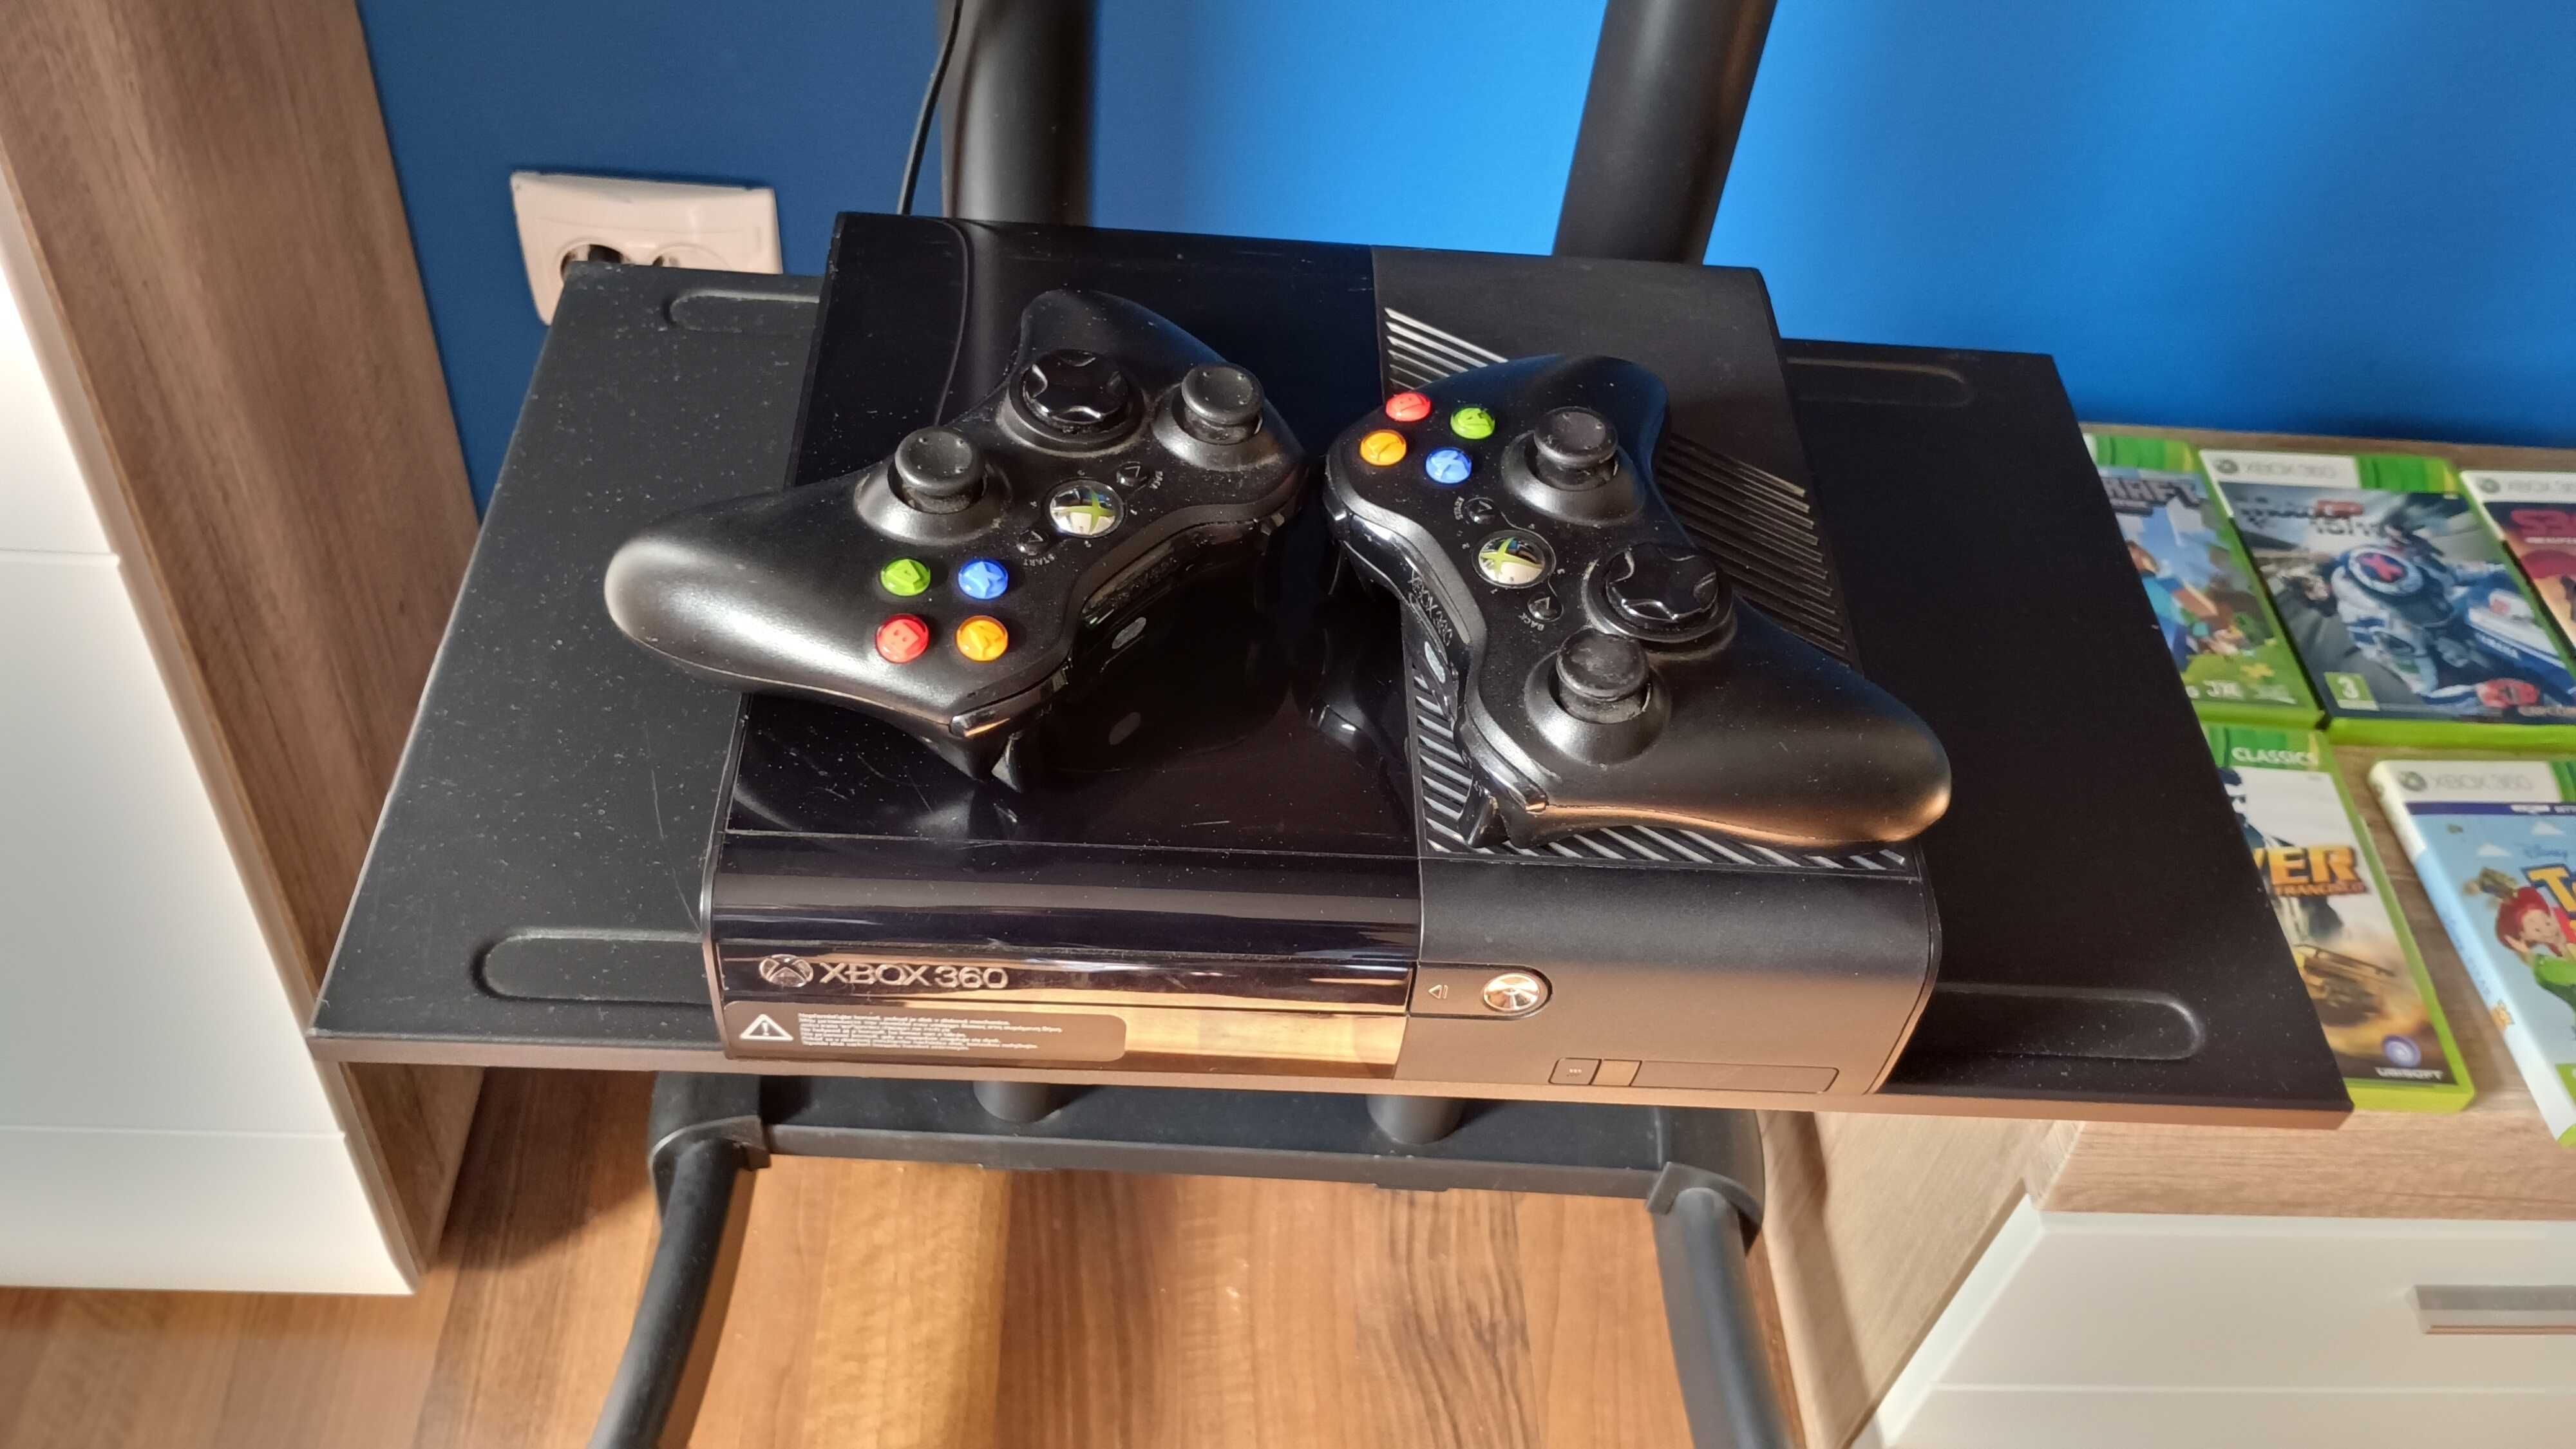 XBOX360 + Kinect senzor + 2 joystick-uri + Jocuri